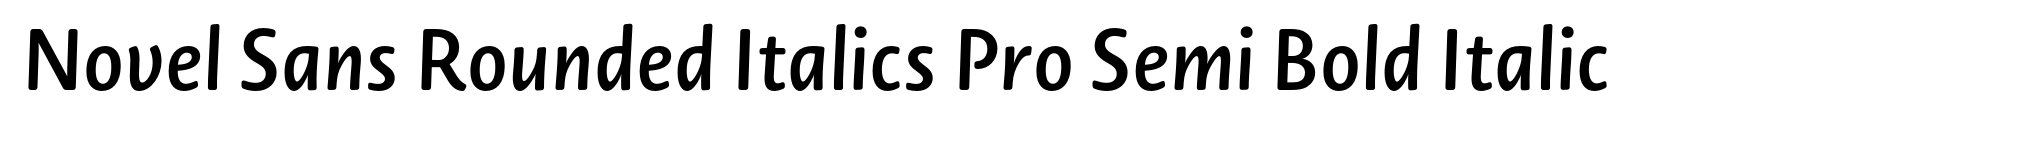 Novel Sans Rounded Italics Pro Semi Bold Italic image